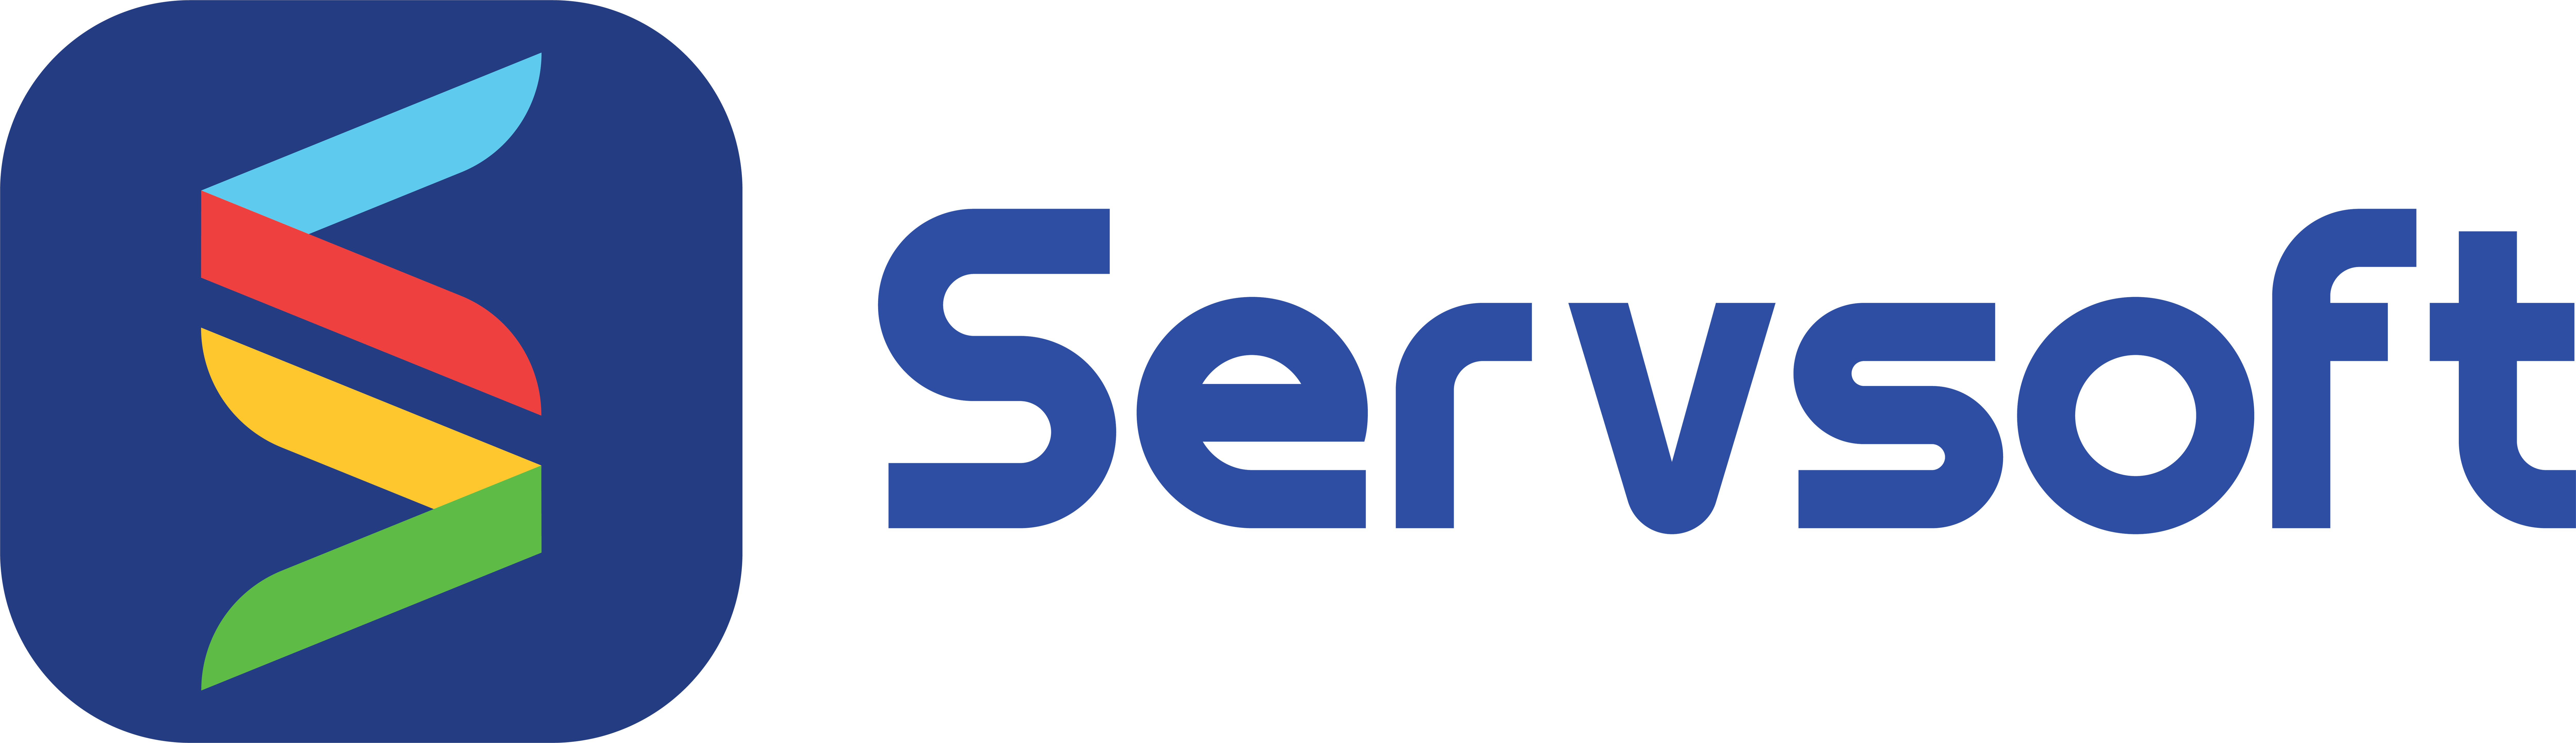 Servsoft